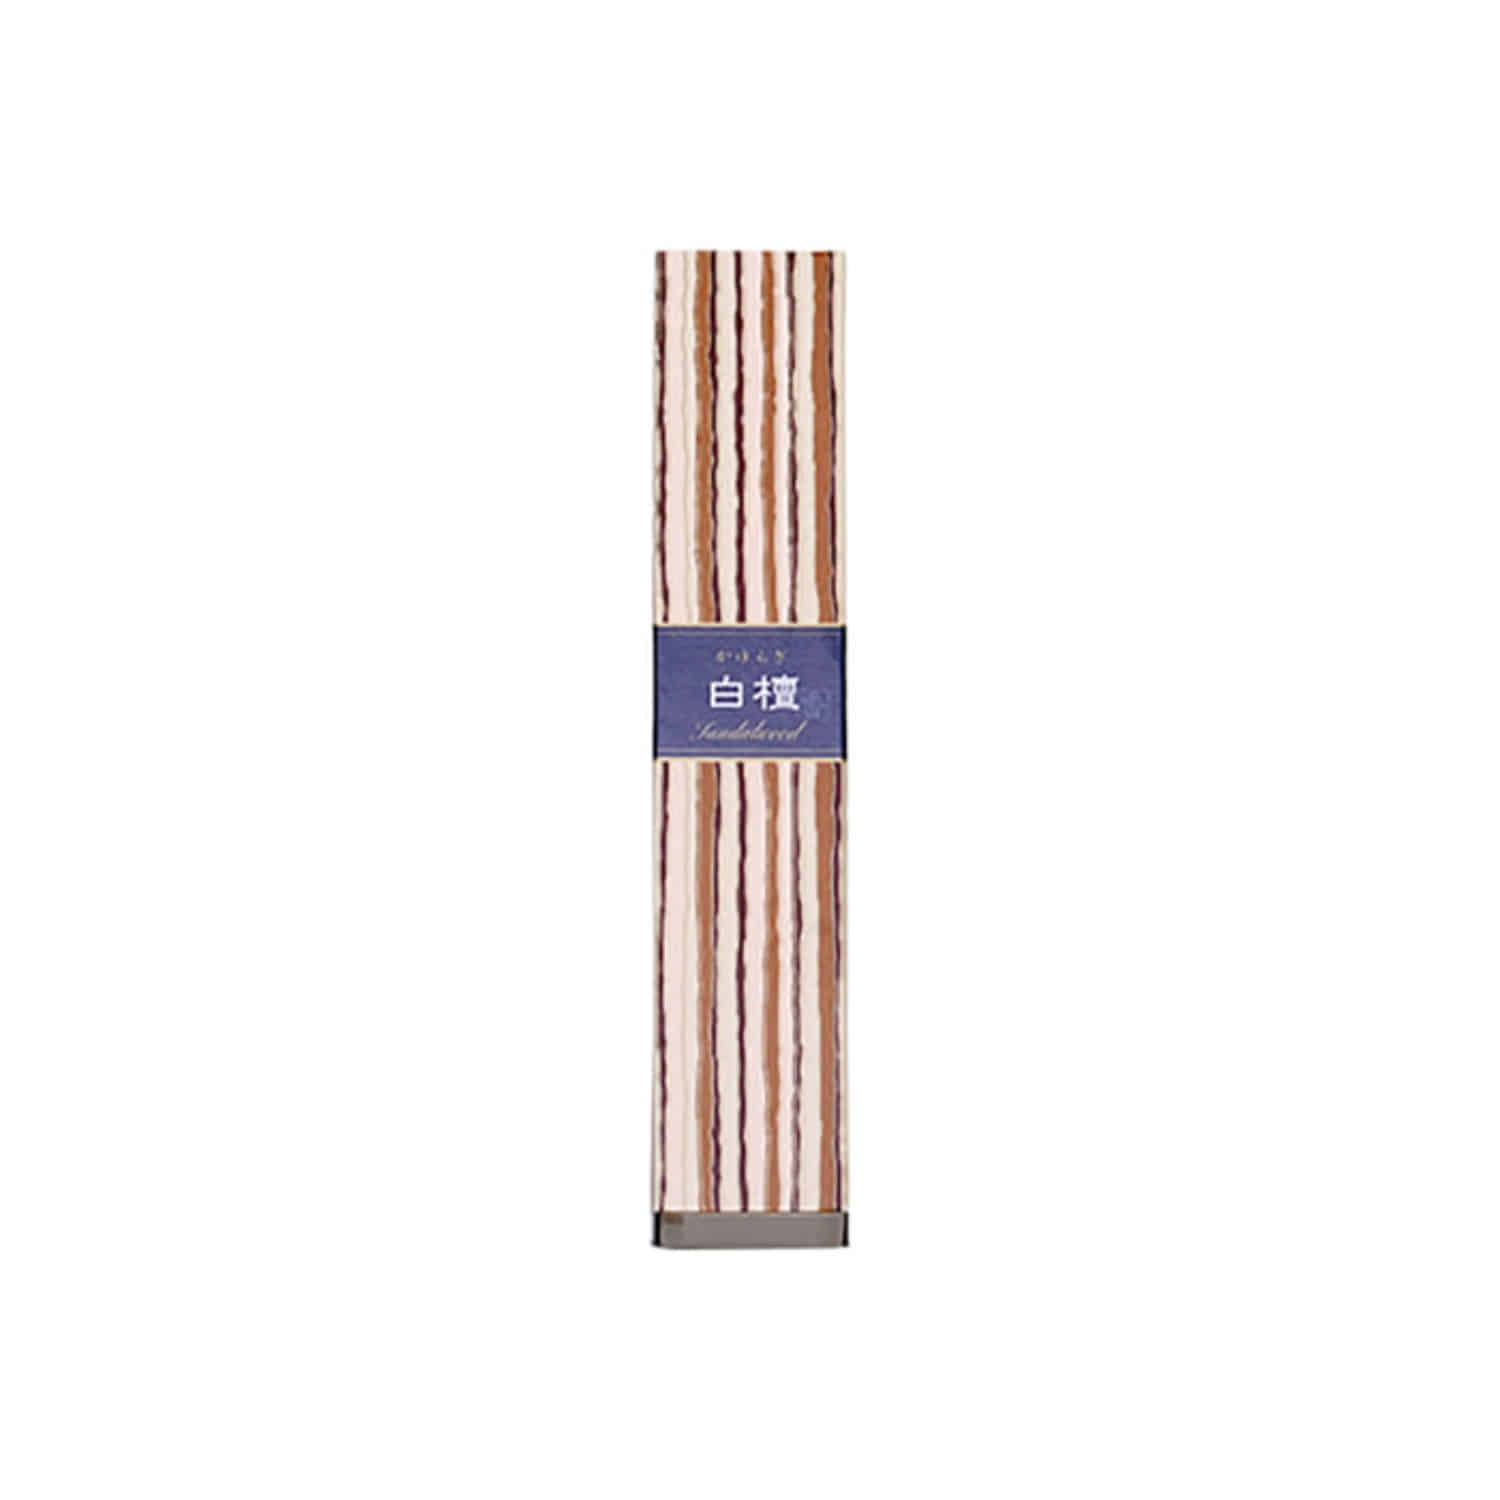 kayuragi sandalwood incense stick